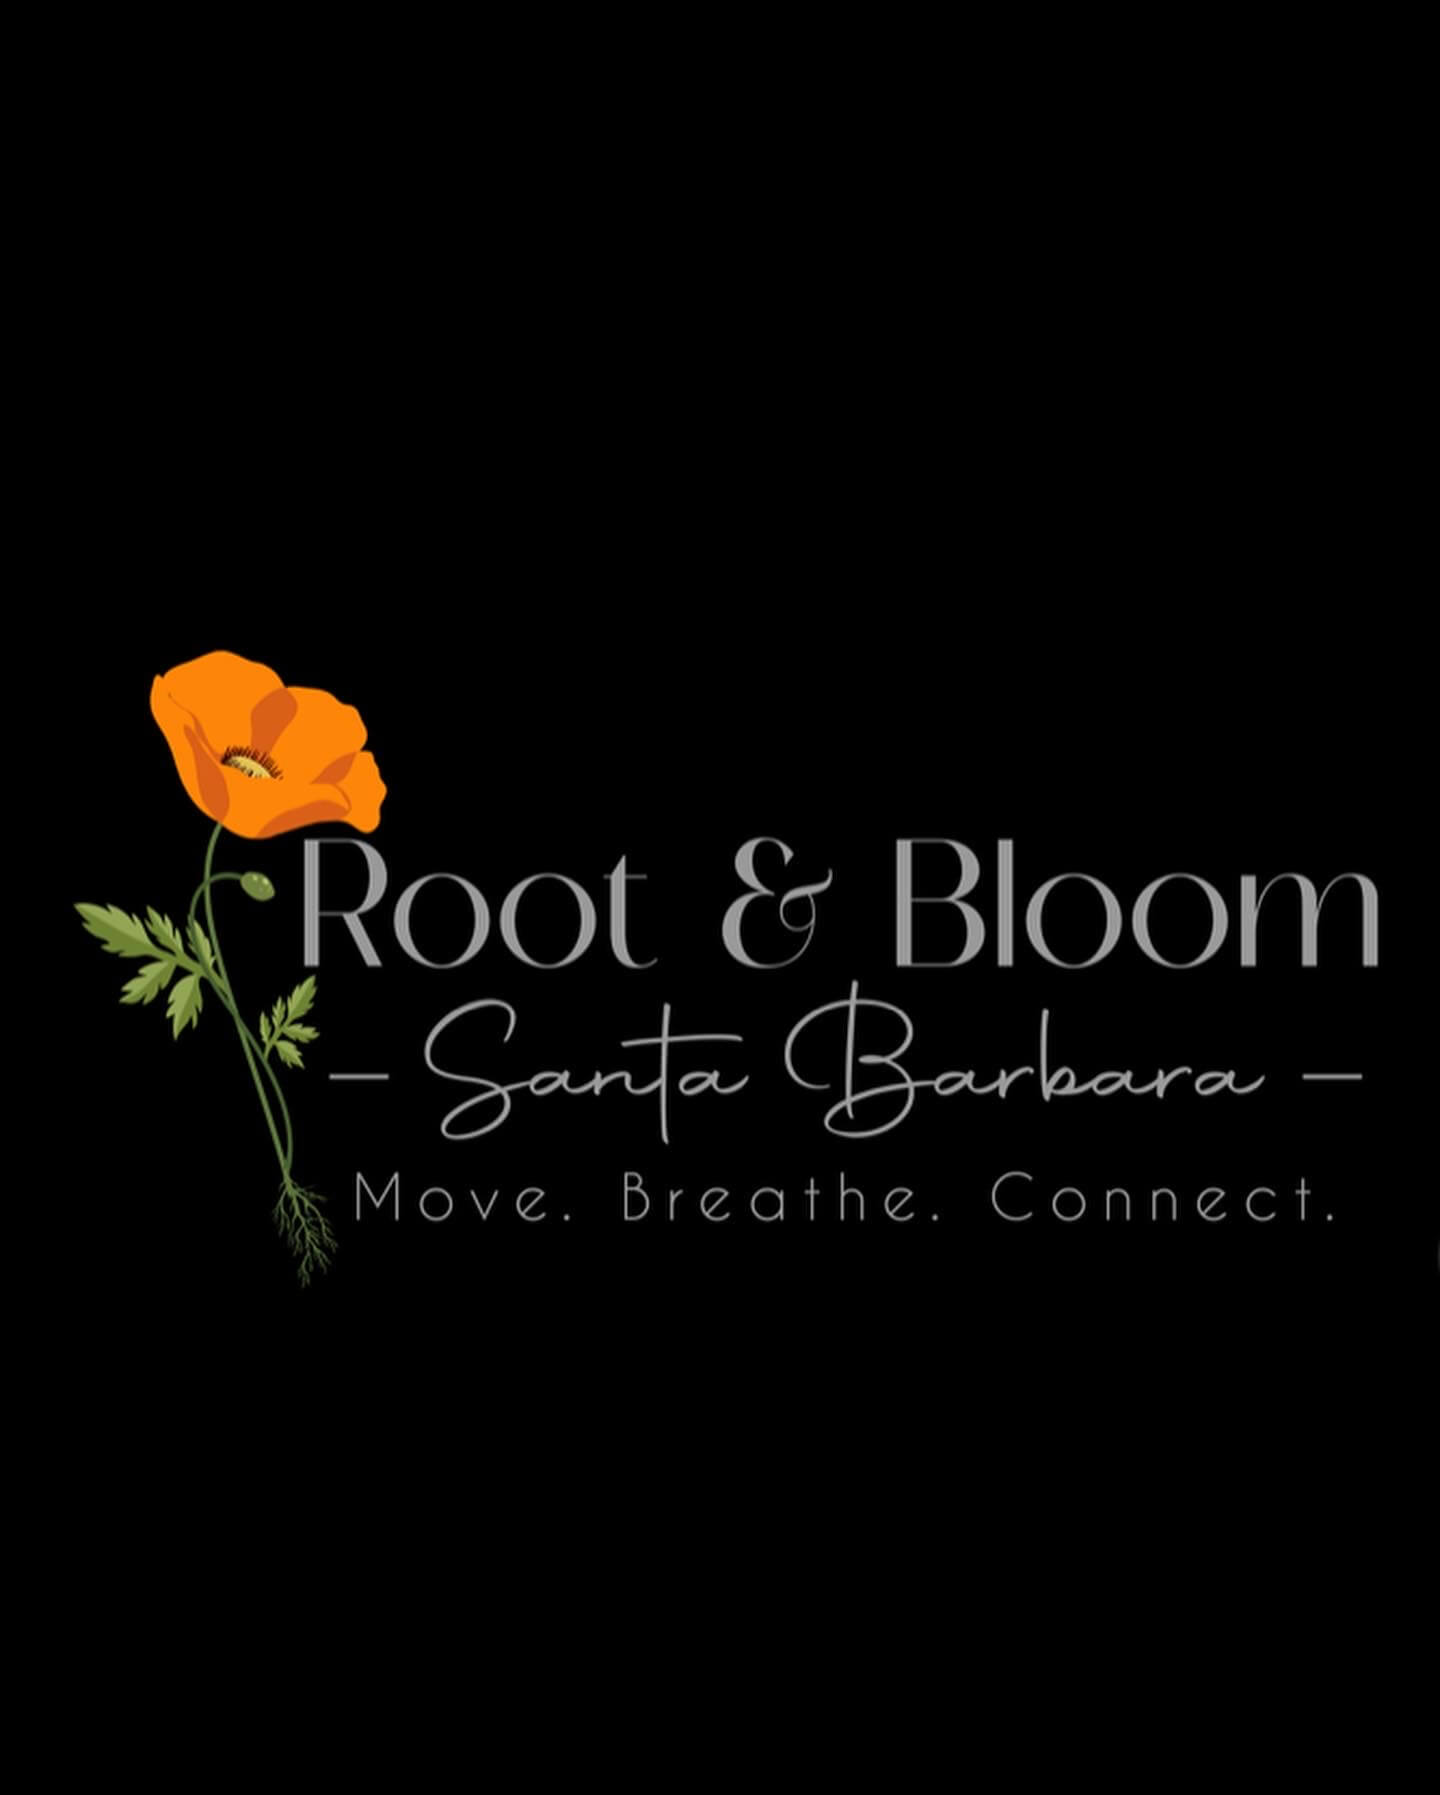 Root & Bloom – Santa Barbara